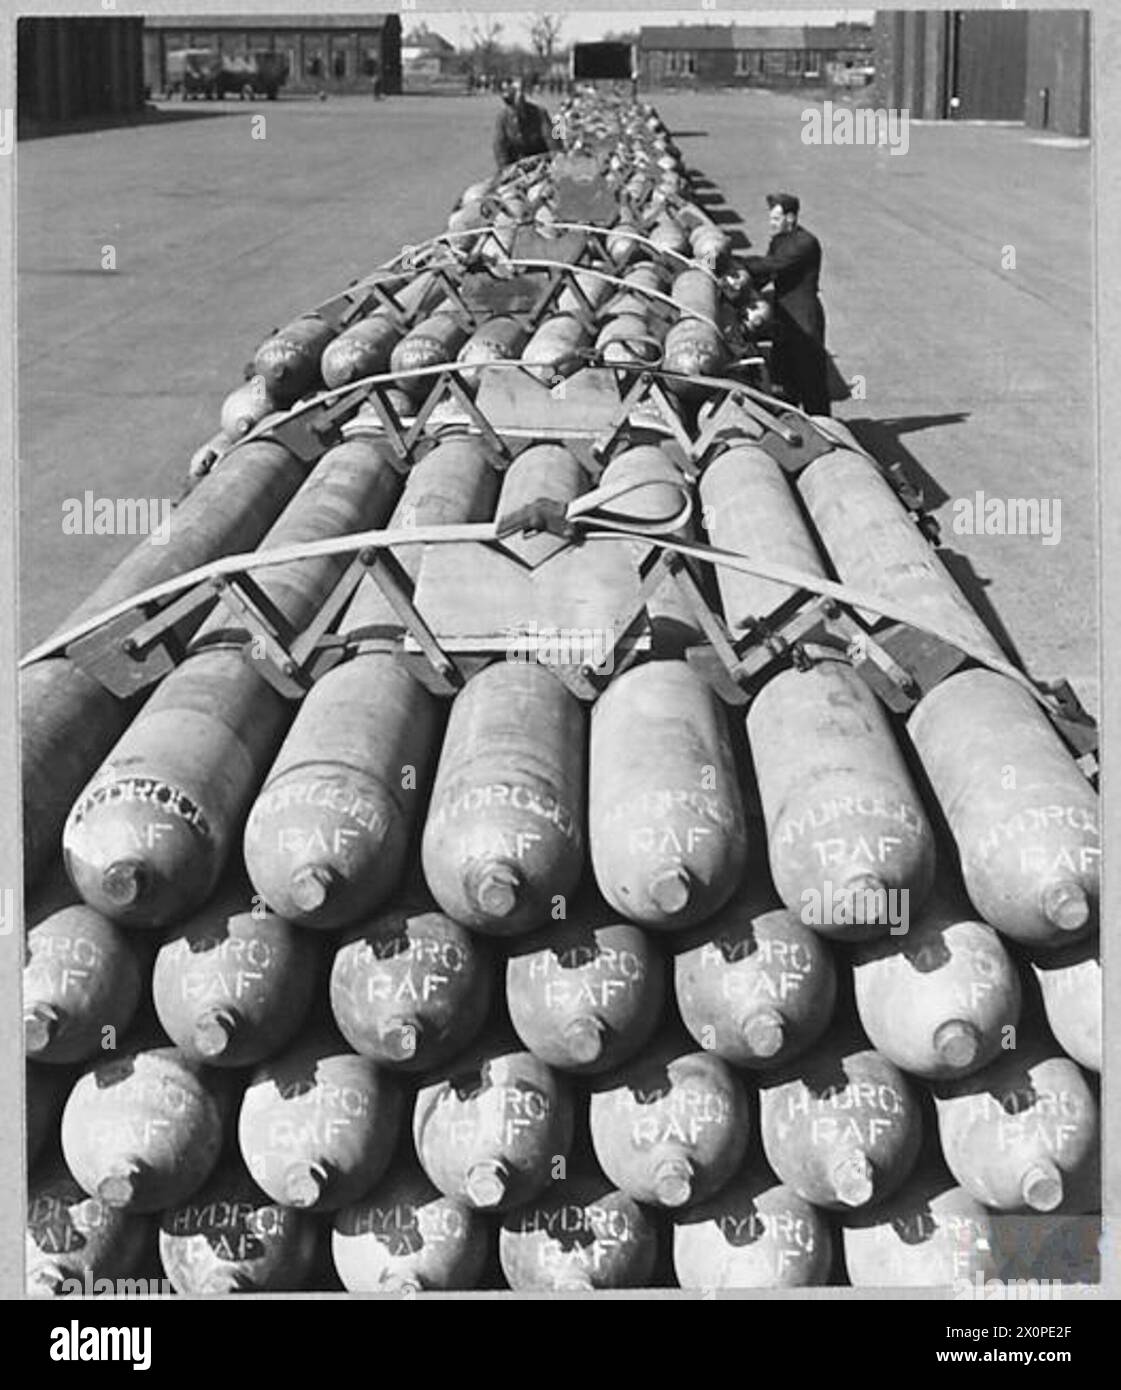 INVASIONSBALLONÜBUNGEN. - Für die Geschichte siehe CH.13208. Abbildung (Ausgabe 1944) zeigt: Lange Reihe von Wasserstoffflaschen, die vor dem Verschieben zum Aufblasen von Ballonen an den Kai druckgeprüft werden. Jeder Anhänger trägt 30 Zylinder, jeder Zylinder fasst 550 Kubikfuß. Für die Erstbefüllung eines Ballons werden fünf Zylinder verwendet. Fotografisches negativ, Royal Air Force Stockfoto